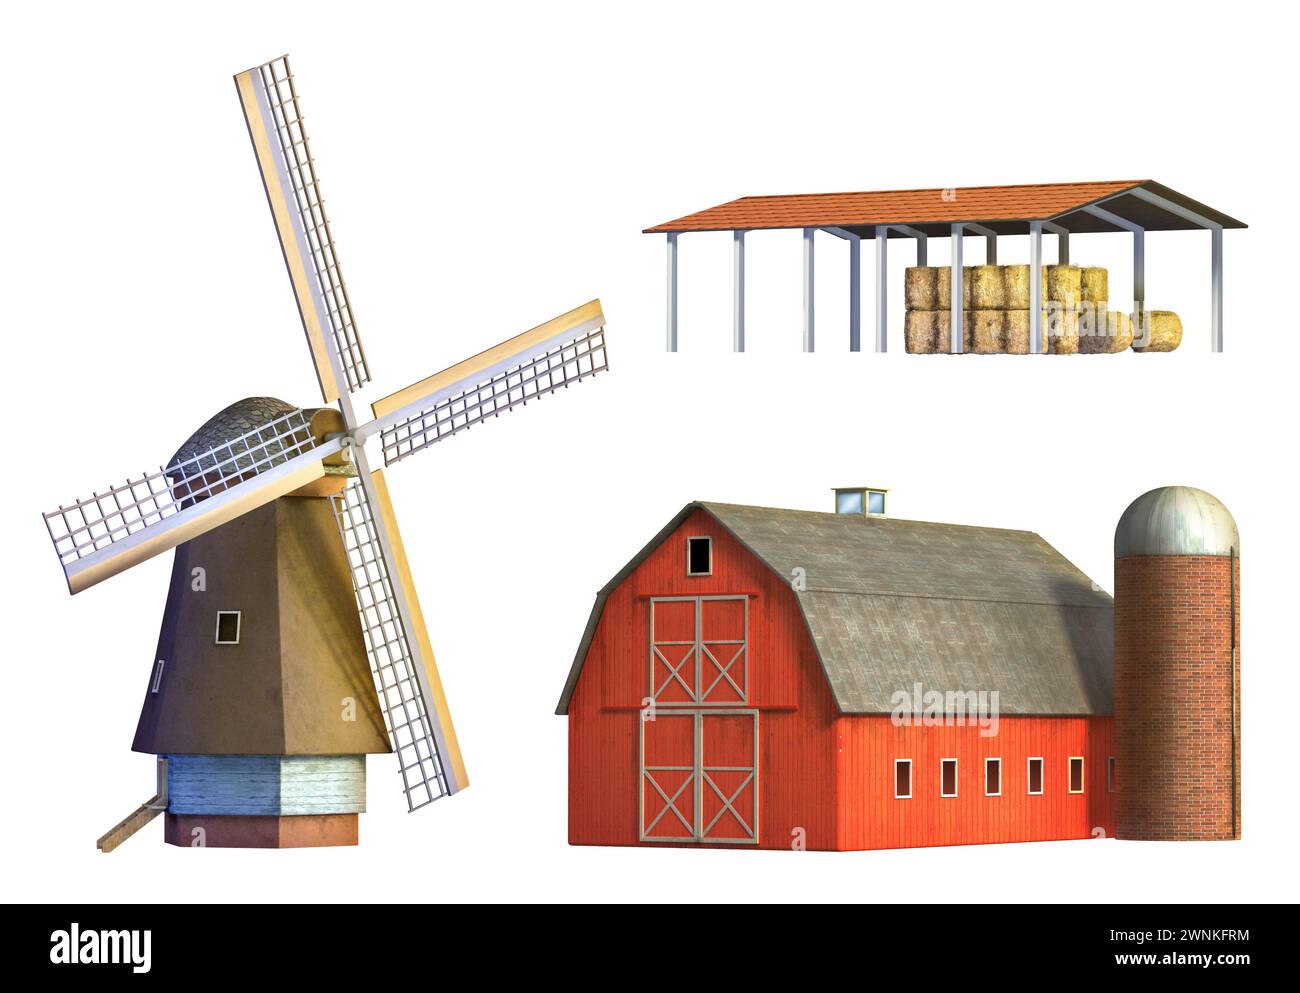 Verschiedene Beispiele ländlicher Architektur: Windmühle, Scheune und Depot. Digitale Illustration, Beschneidungspfad enthalten. Stockfoto